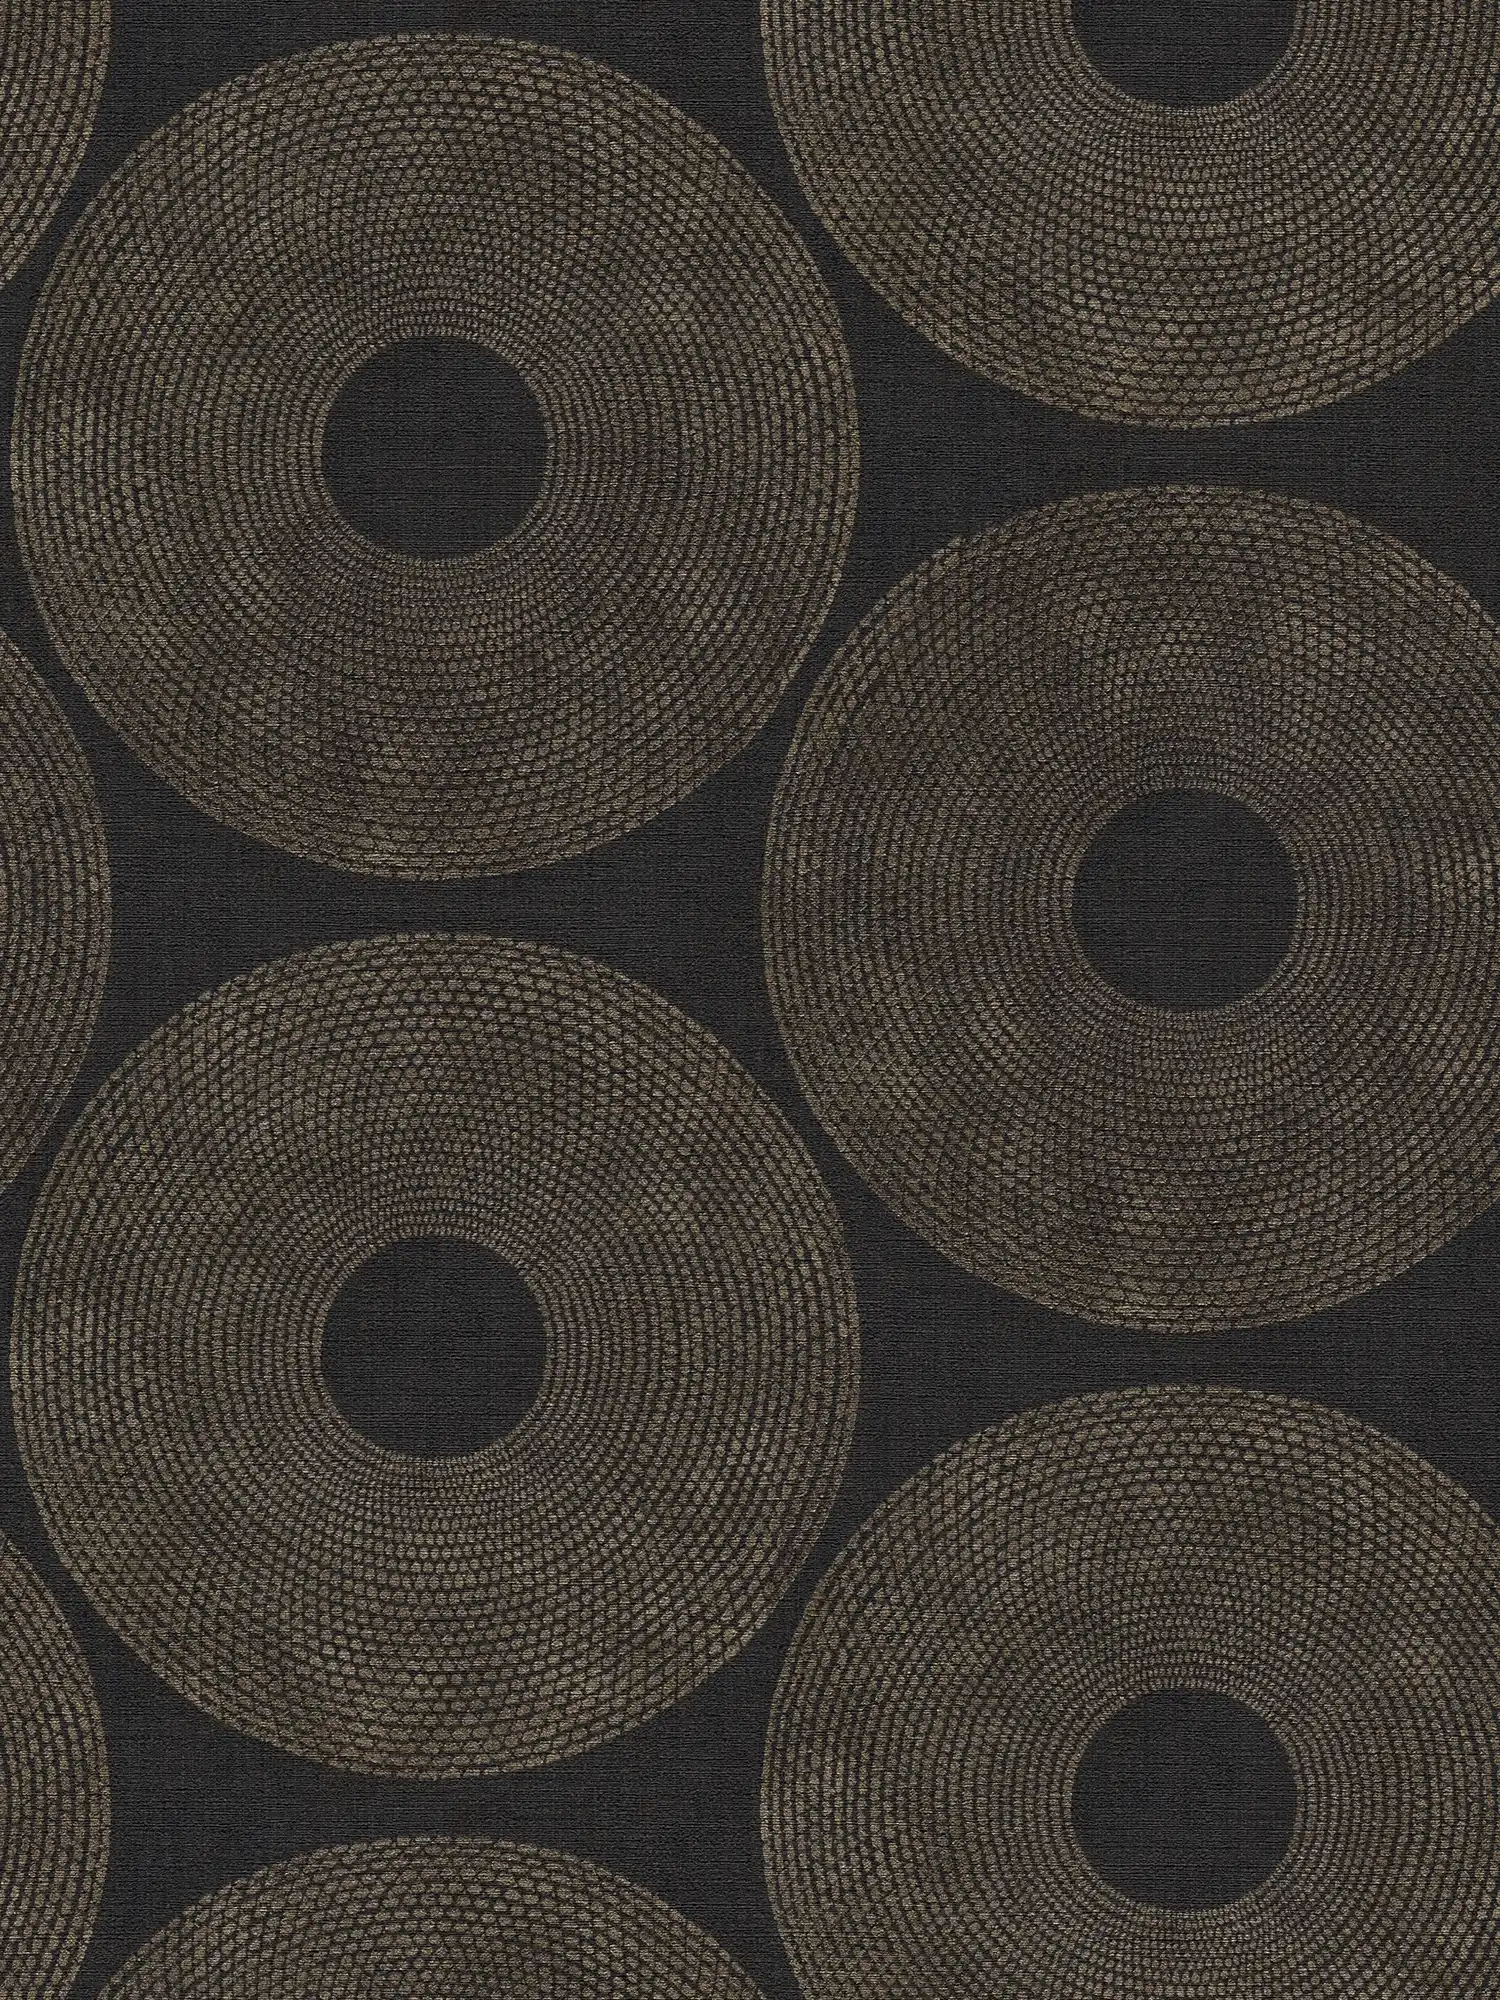         Papier peint ethnique Cercles avec motifs structurés - gris, marron
    